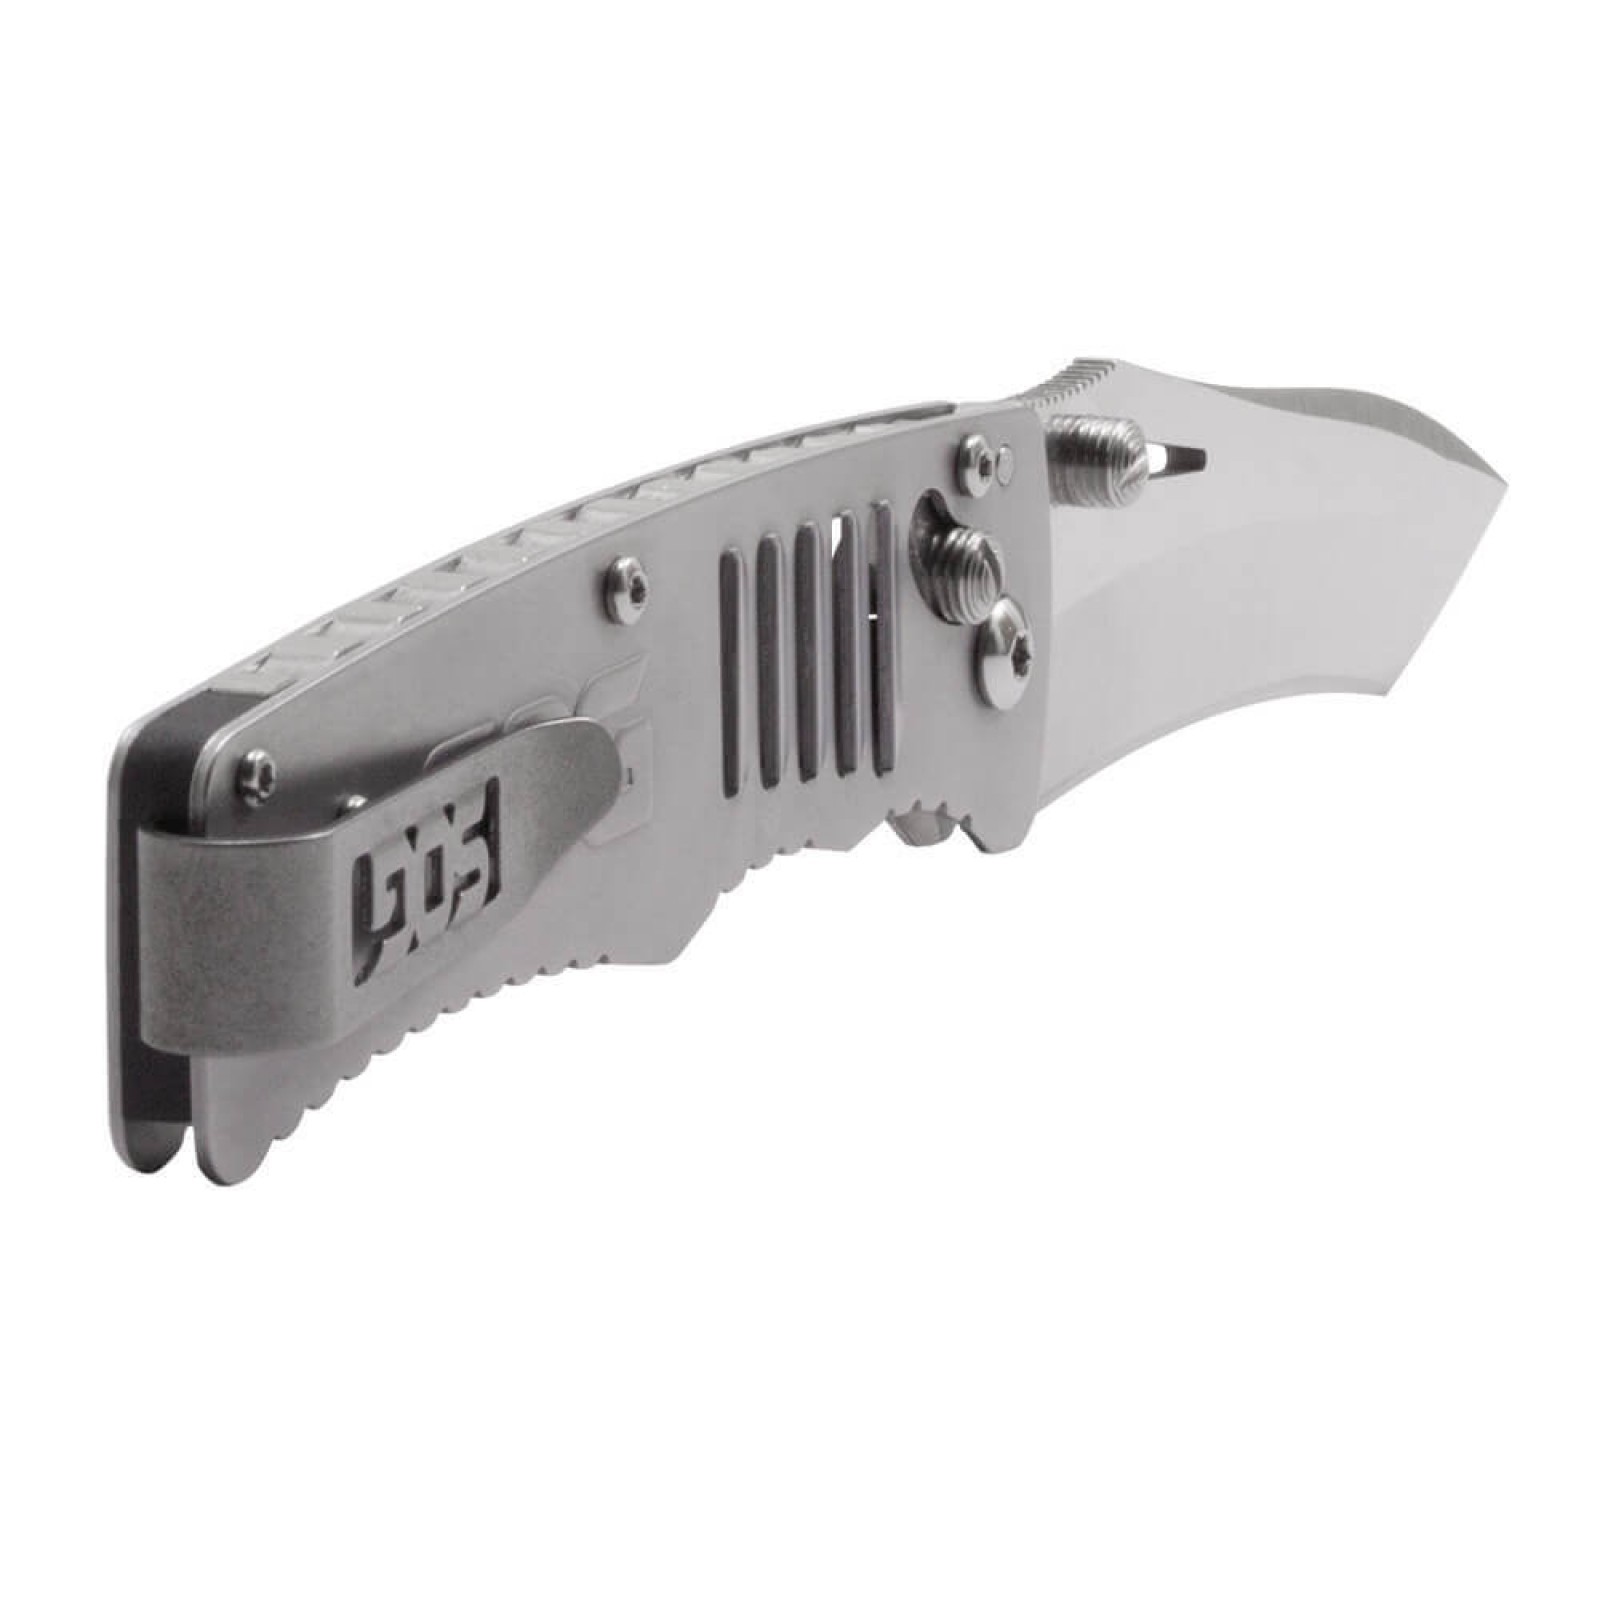 Складной нож Targa Satin - SOG TG1001, сталь VG-10, рукоять нержавеющая сталь, серый - фото 5